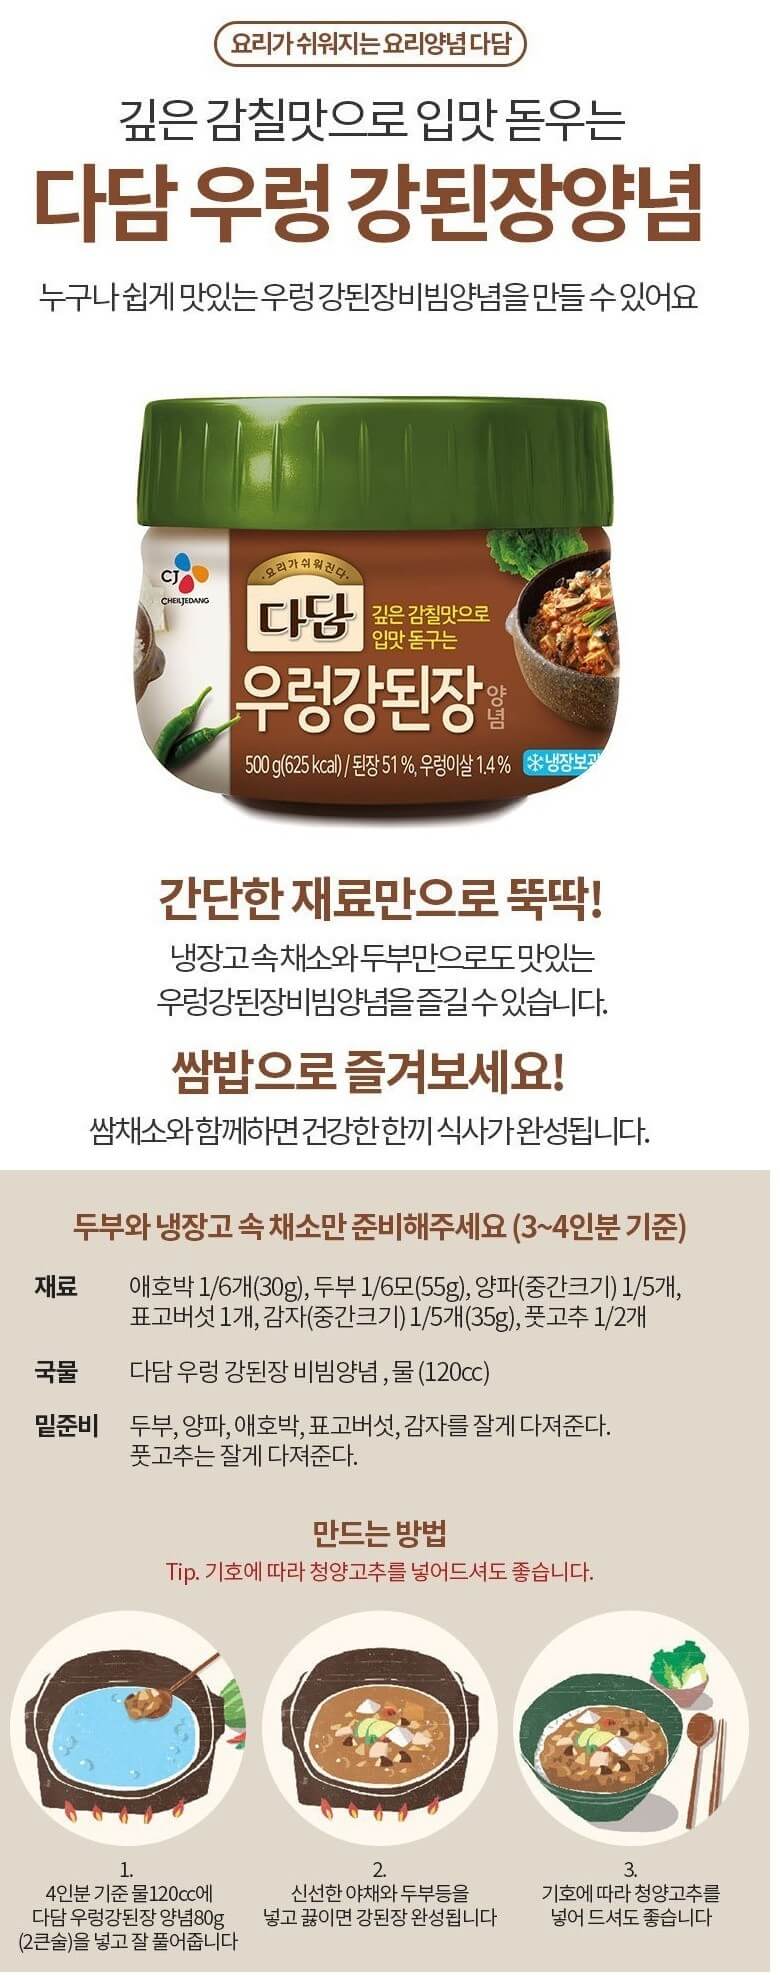 韓國食品-[CJ] 다담 우렁강된장양념 500g